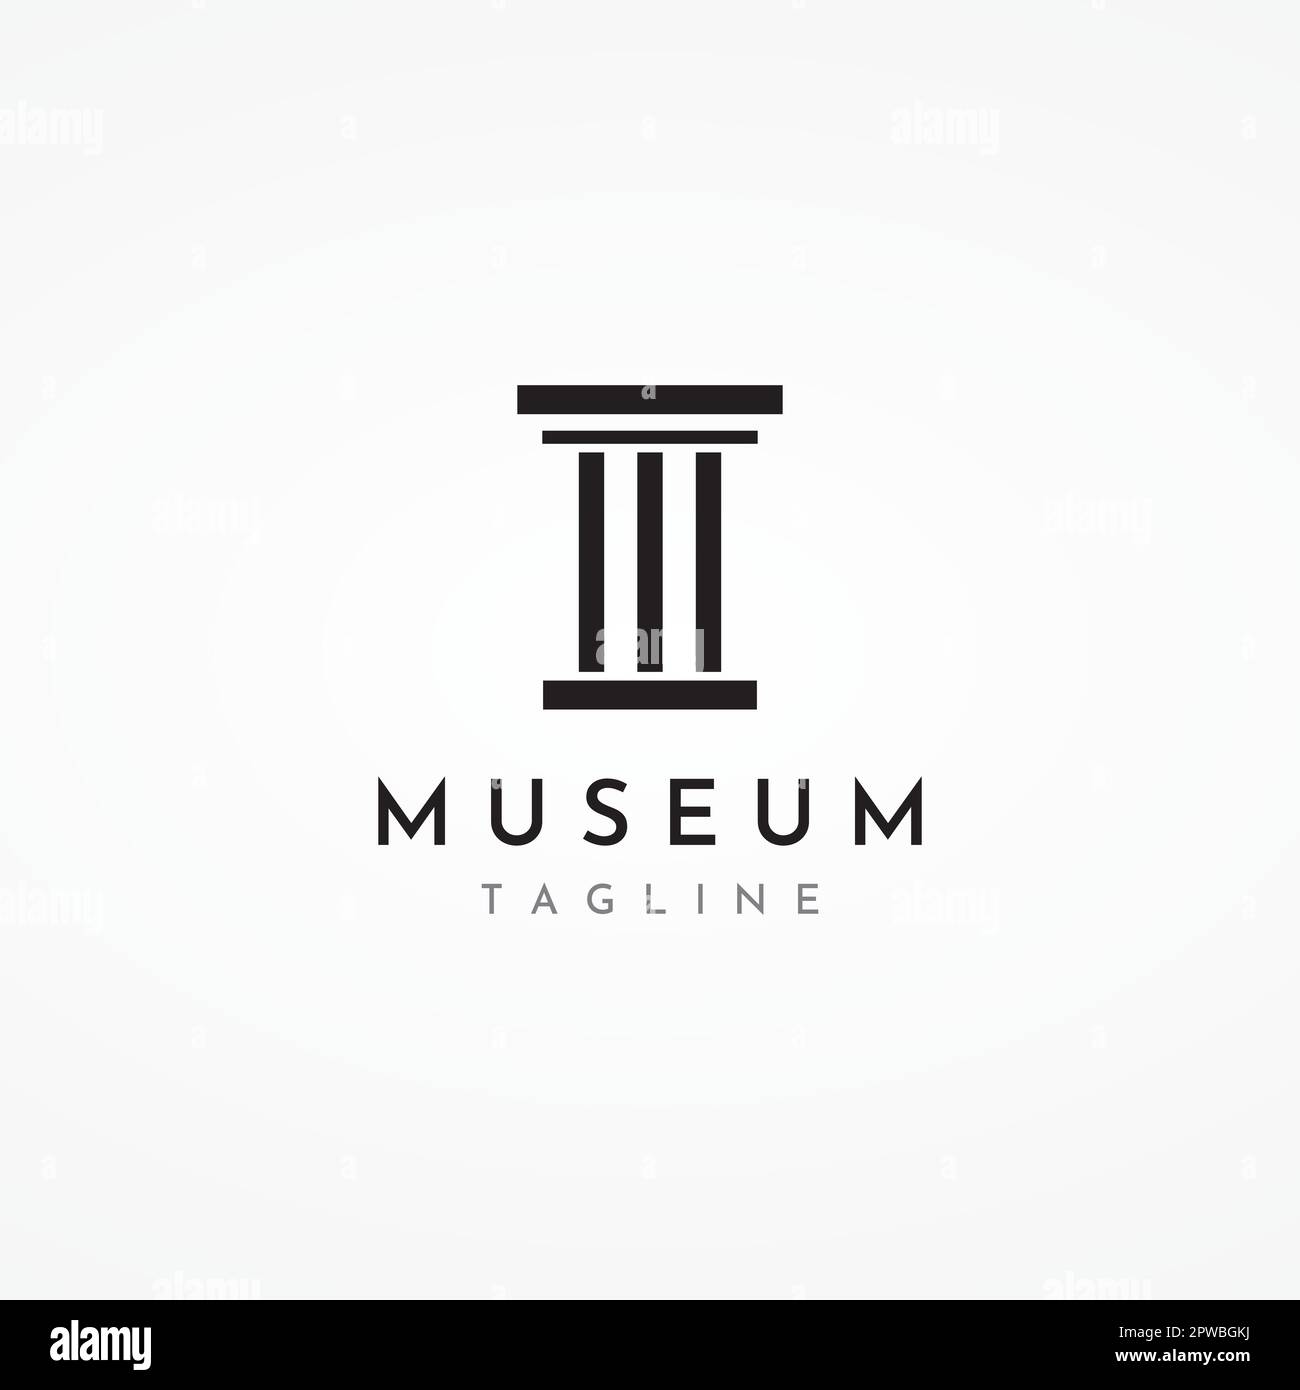 Museen, Museumssäulen, Museumslinien, Logos der Museumssäulen. Museen mit minimalistischen und modernen Konzepten. Logos können für Unternehmen, Museen und Unternehmen verwendet werden. Stock Vektor